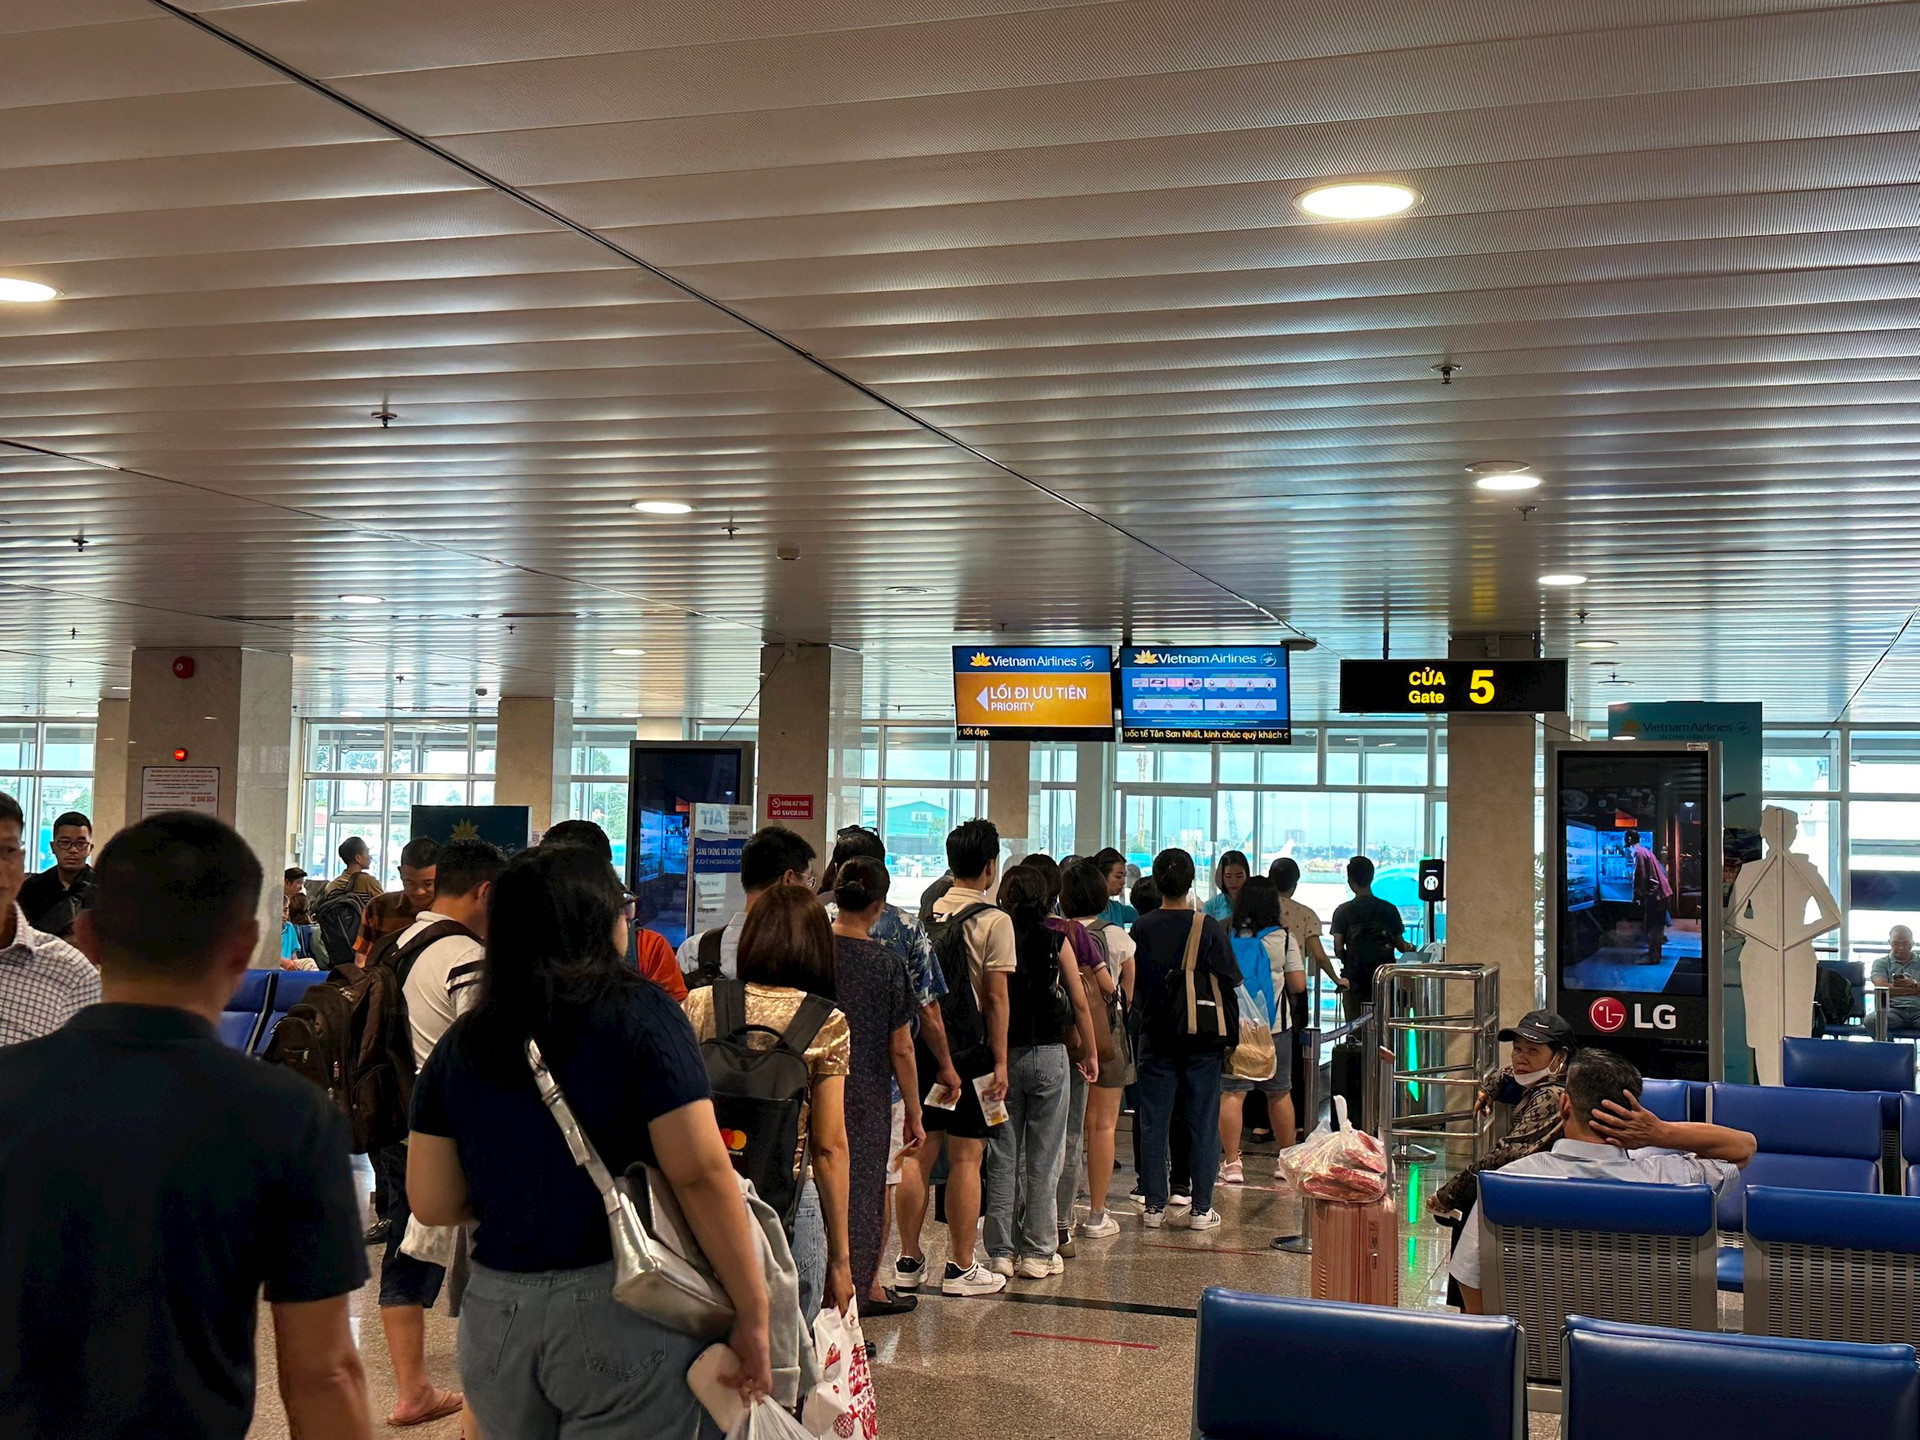 TP Hồ Chí Minh: Nâng cao chất lượng hoạt động sân bay Tân Sơn Nhất nhằm thúc đẩy du lịch  - Ảnh 1.